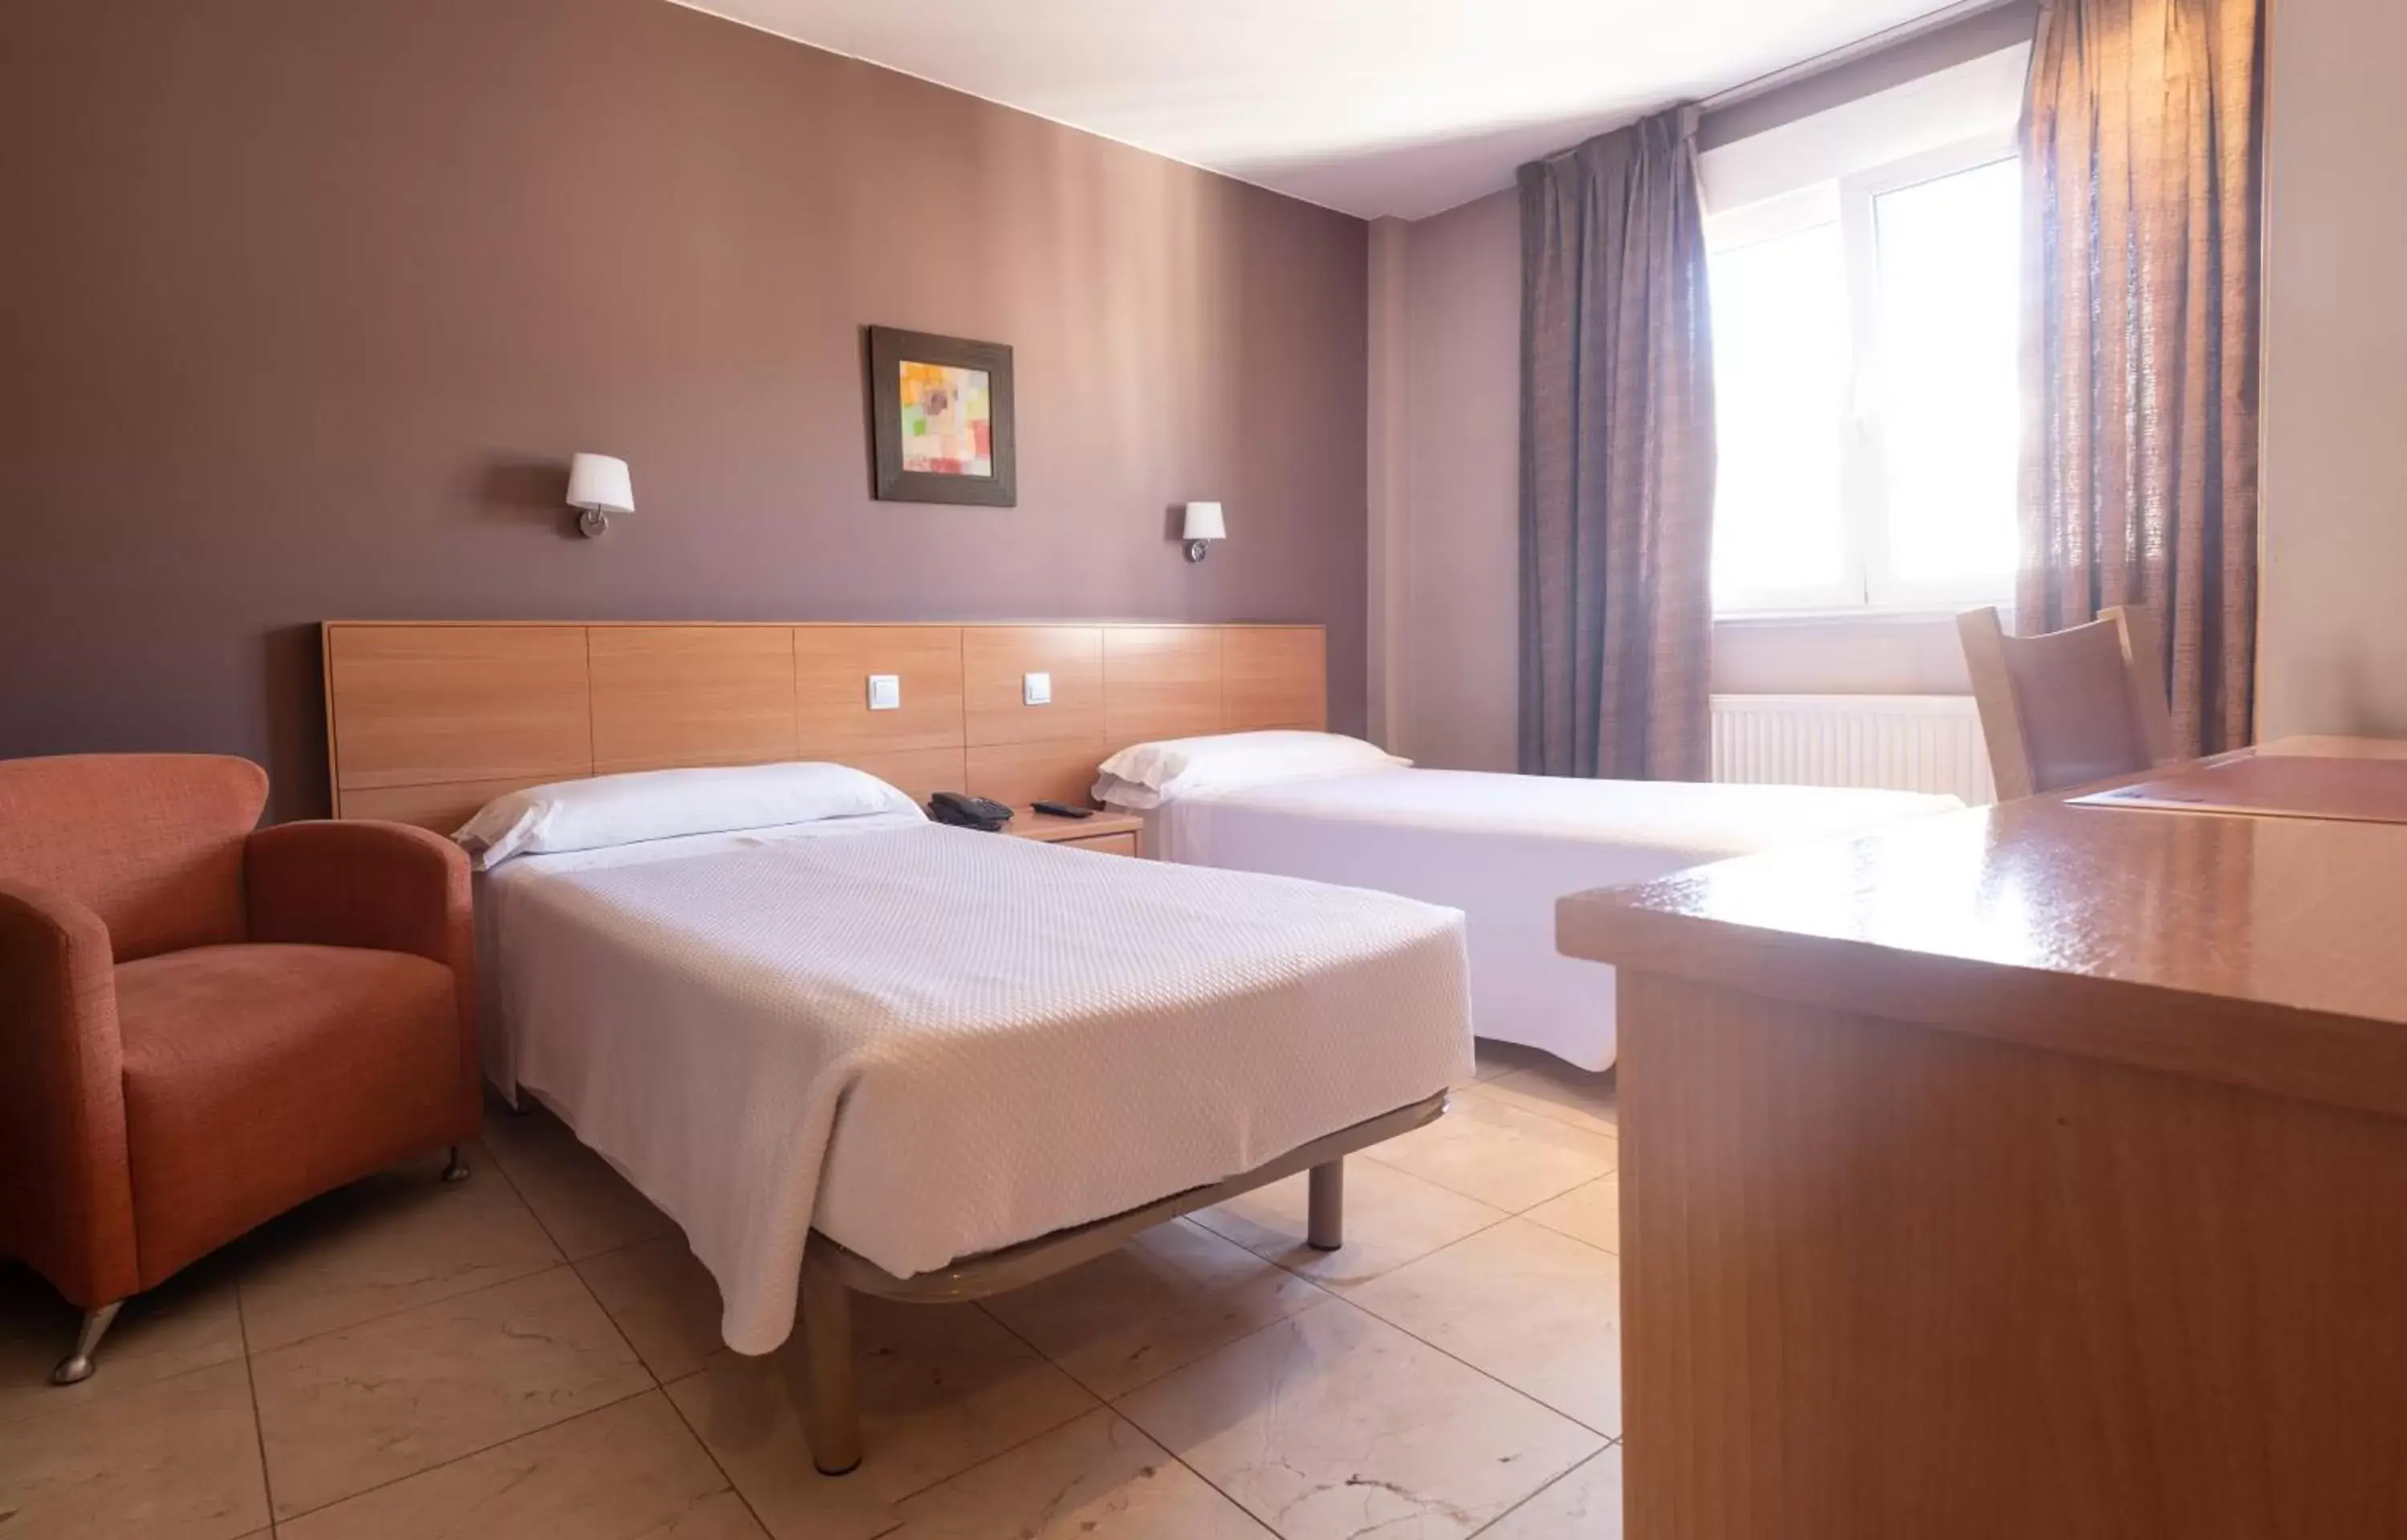 Bed, Room Photo in Hotel Apartamentos Ciudad de Lugo